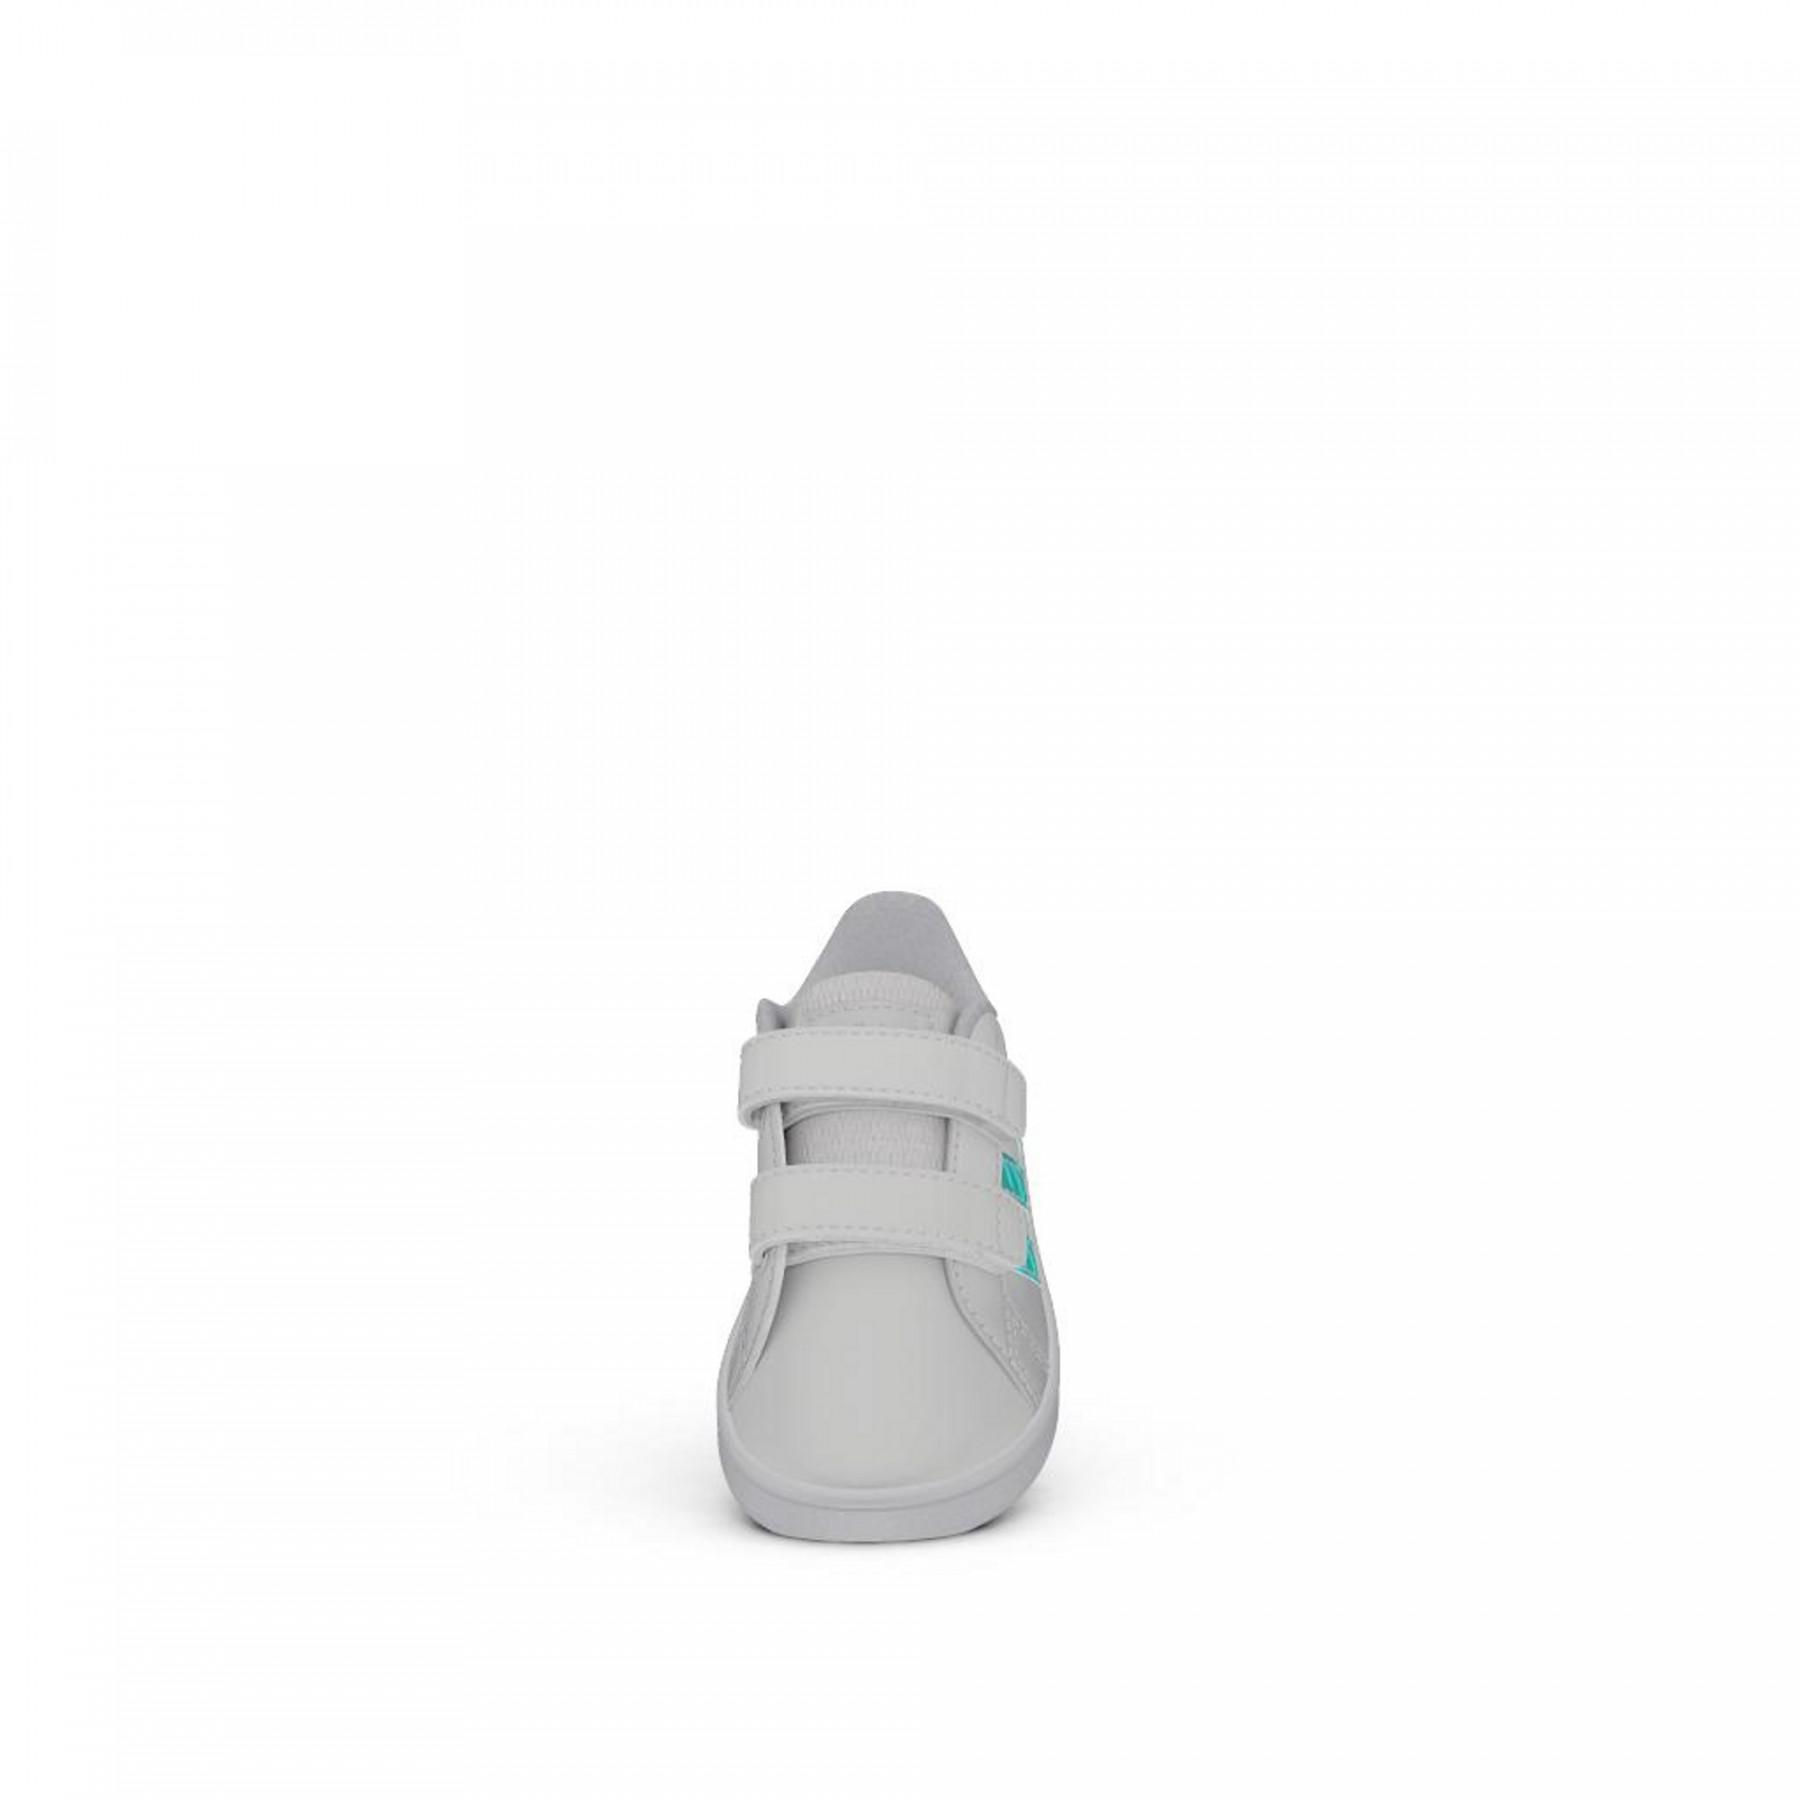 Babytrainer adidas Grand Court